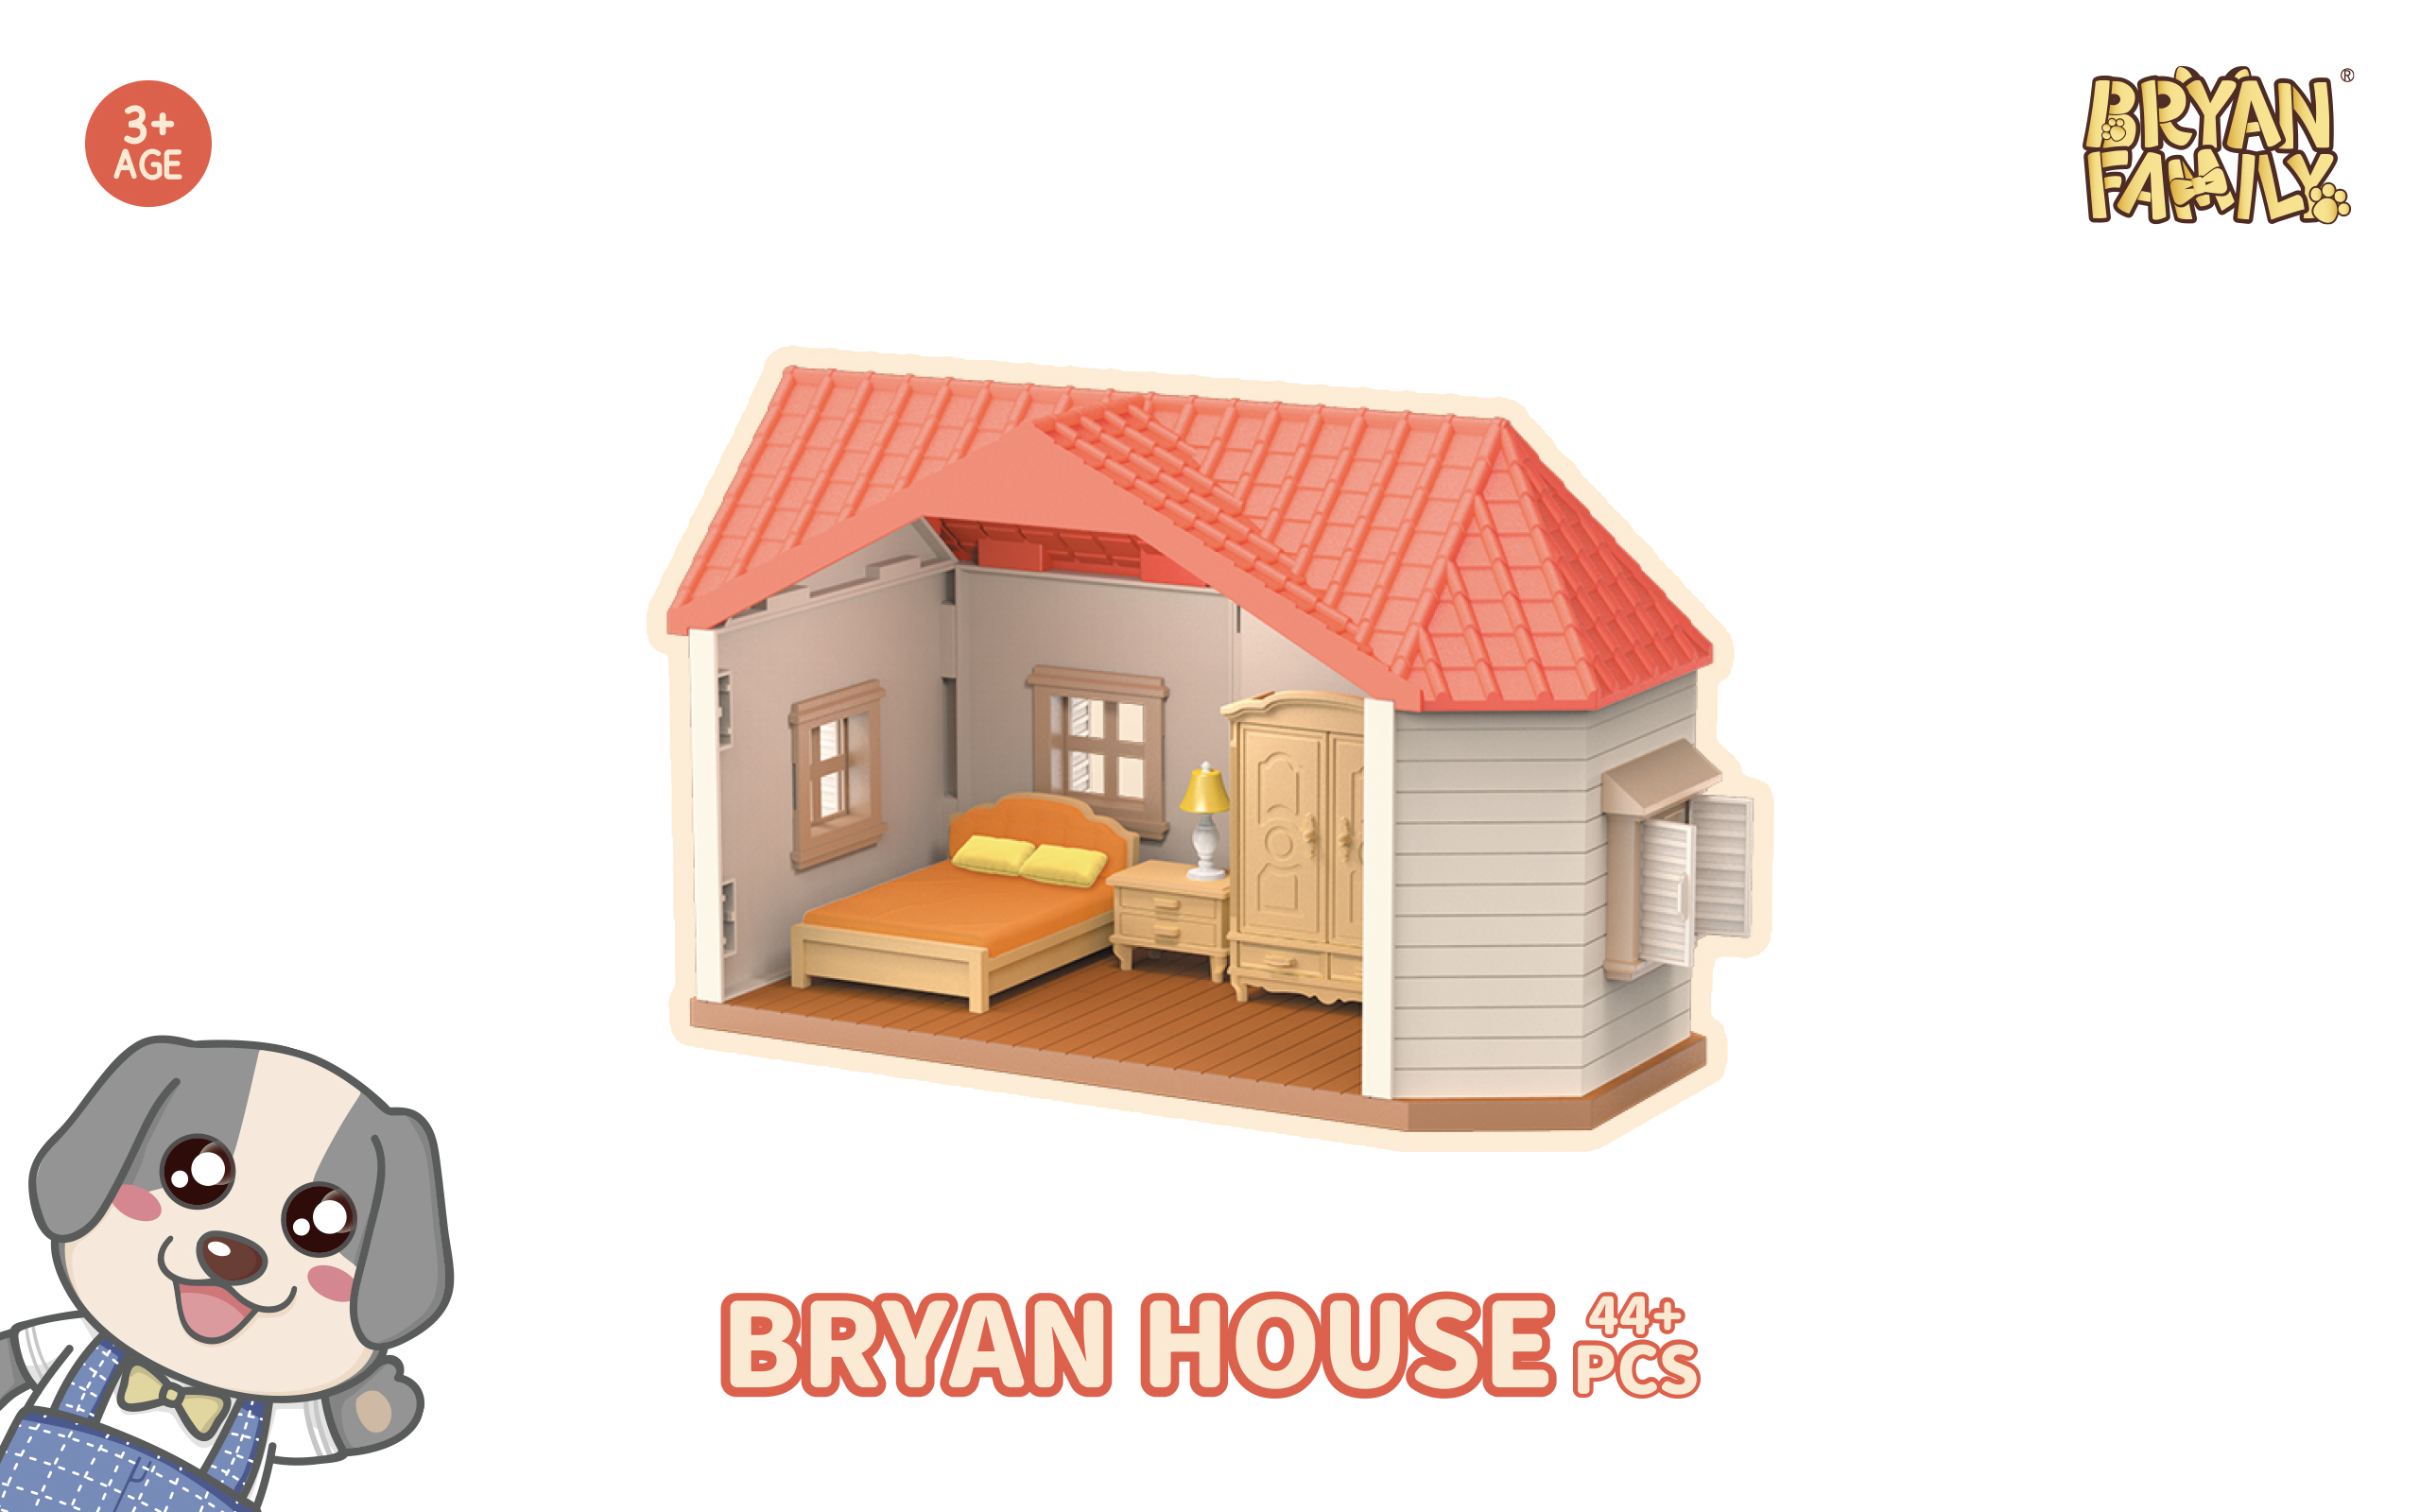 Bryan House 44+PCS